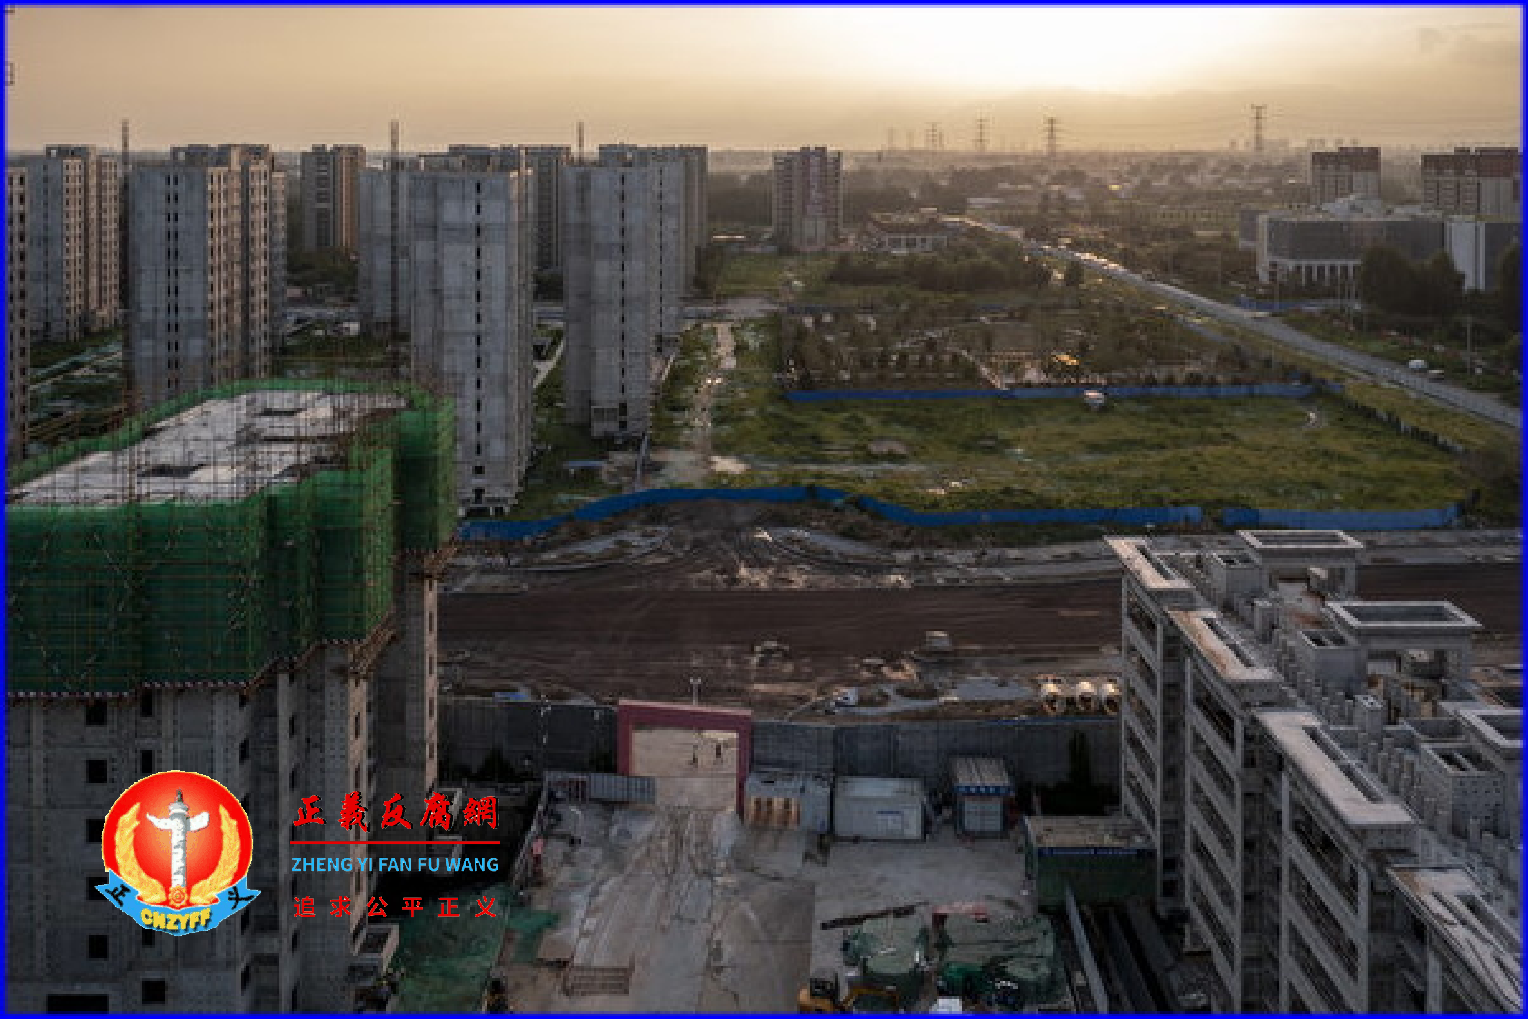 烂尾楼停贷风波在中国各地蔓延，影响房地产销售。数据显示，中国商品房销售7月同比下跌近三成。图为2022年7月29日，恒大集团位于北京的一处楼盘。.png